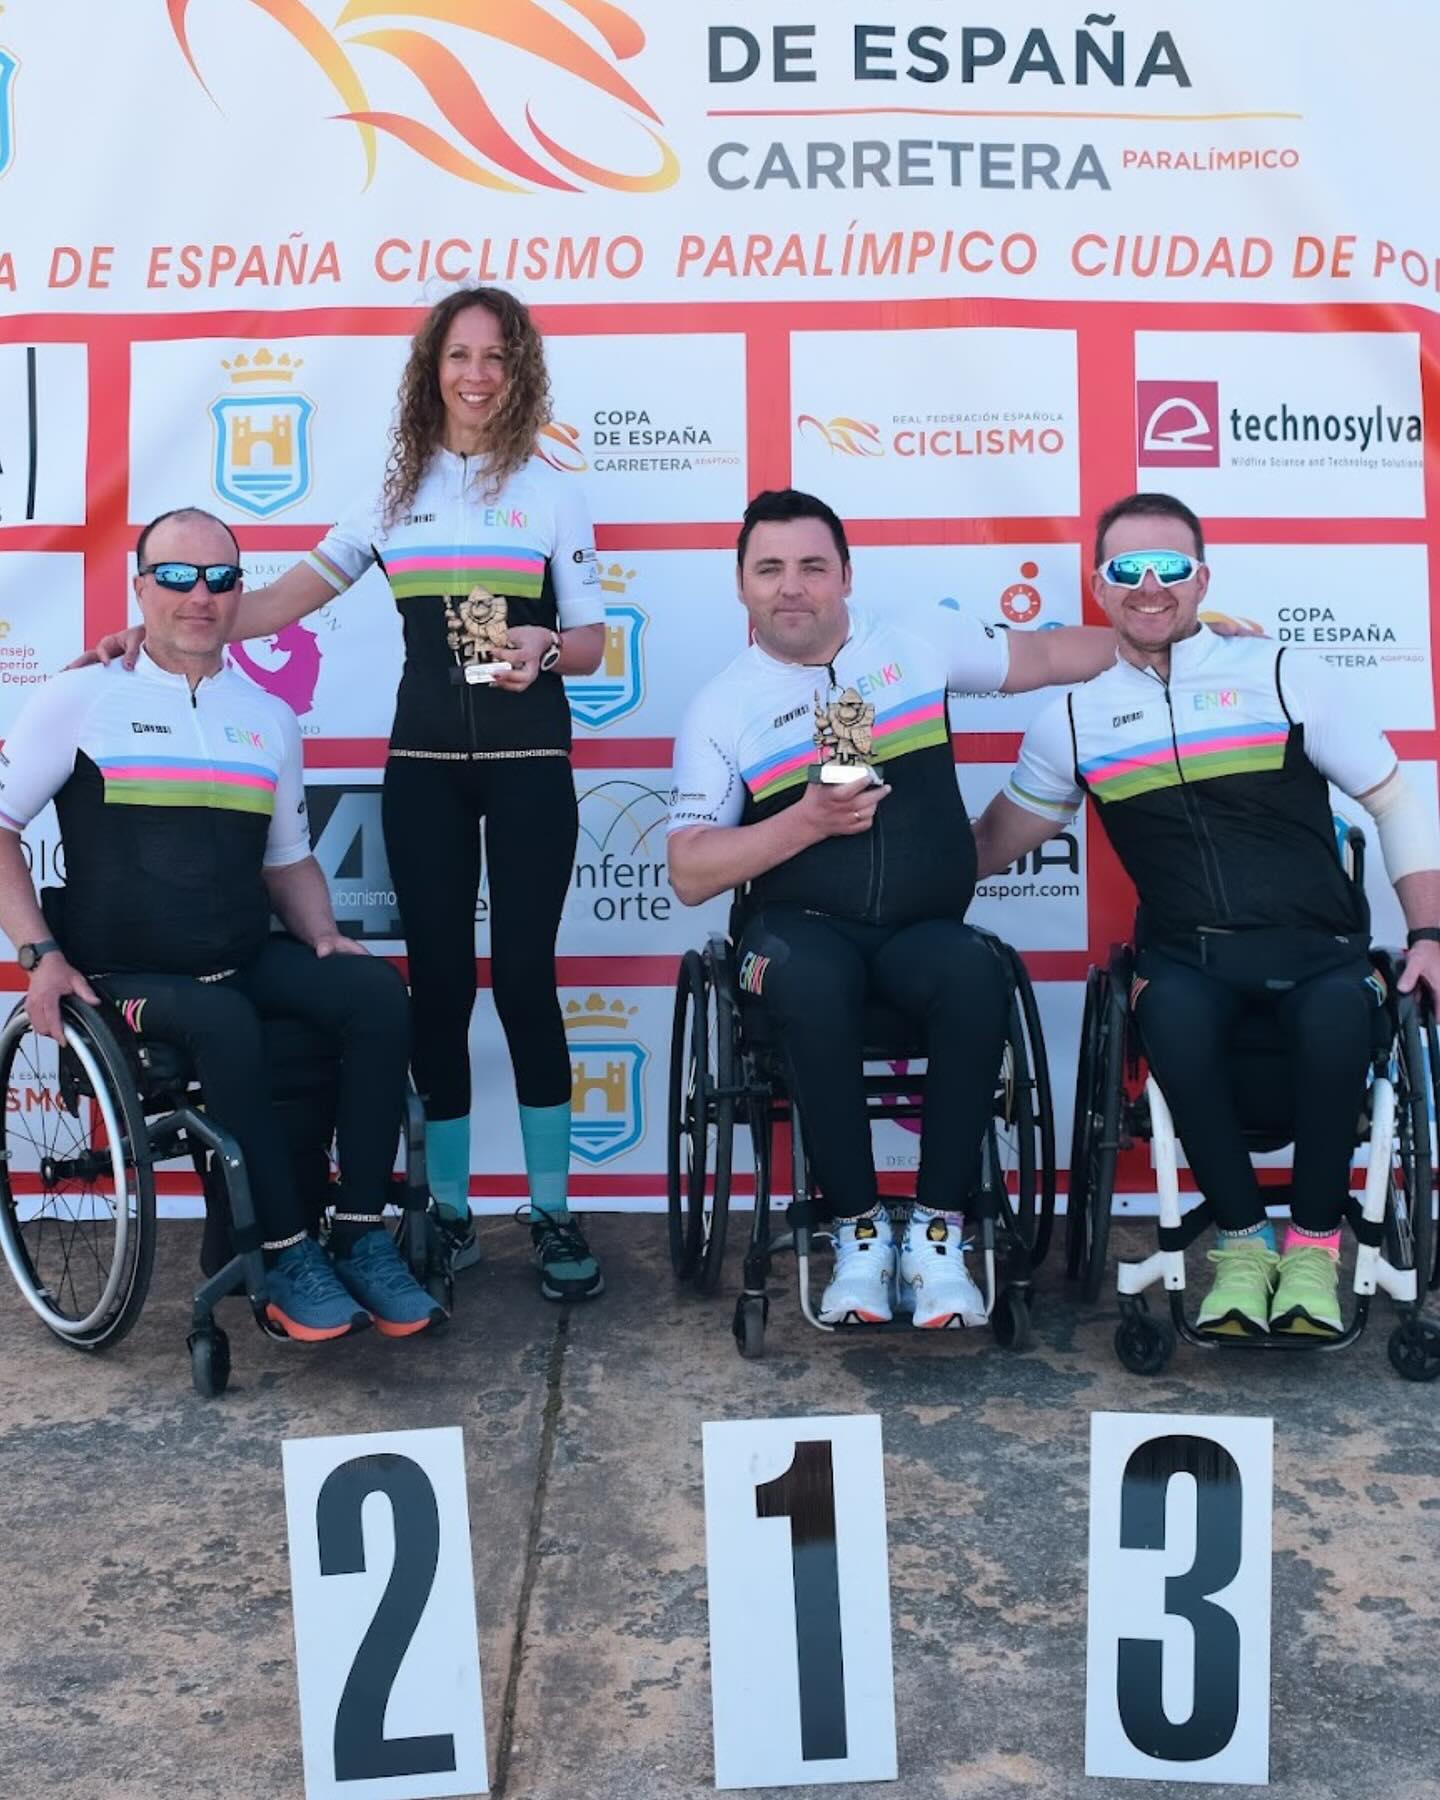 O paraciclismo galego inicia a Copa de España con cinco podios en Ponferrada